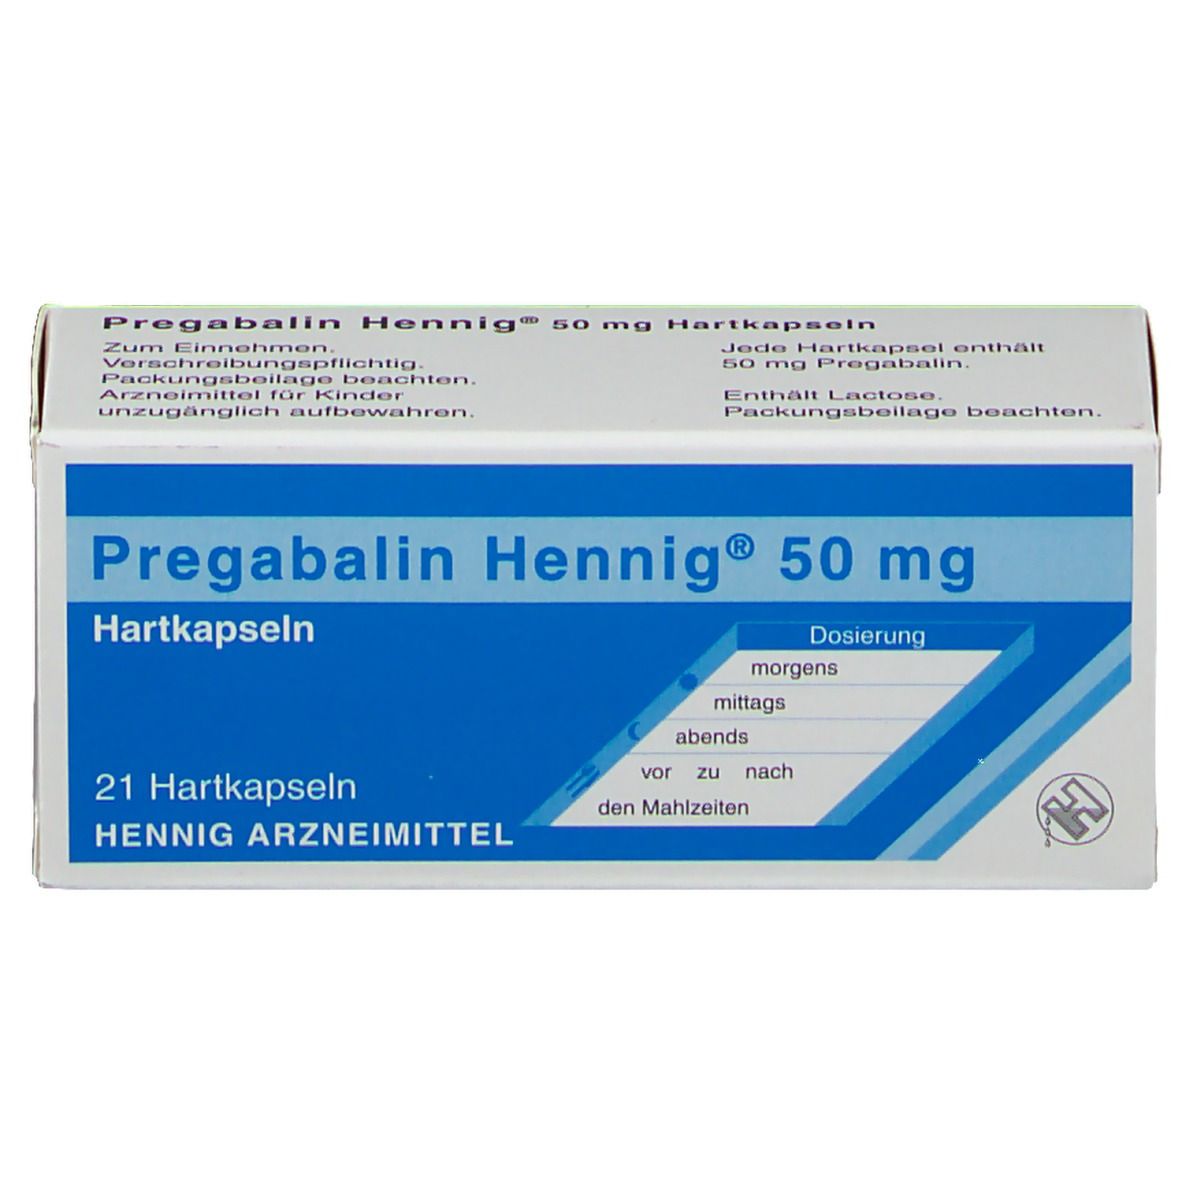 Pregabalin Hennig® 50 mg